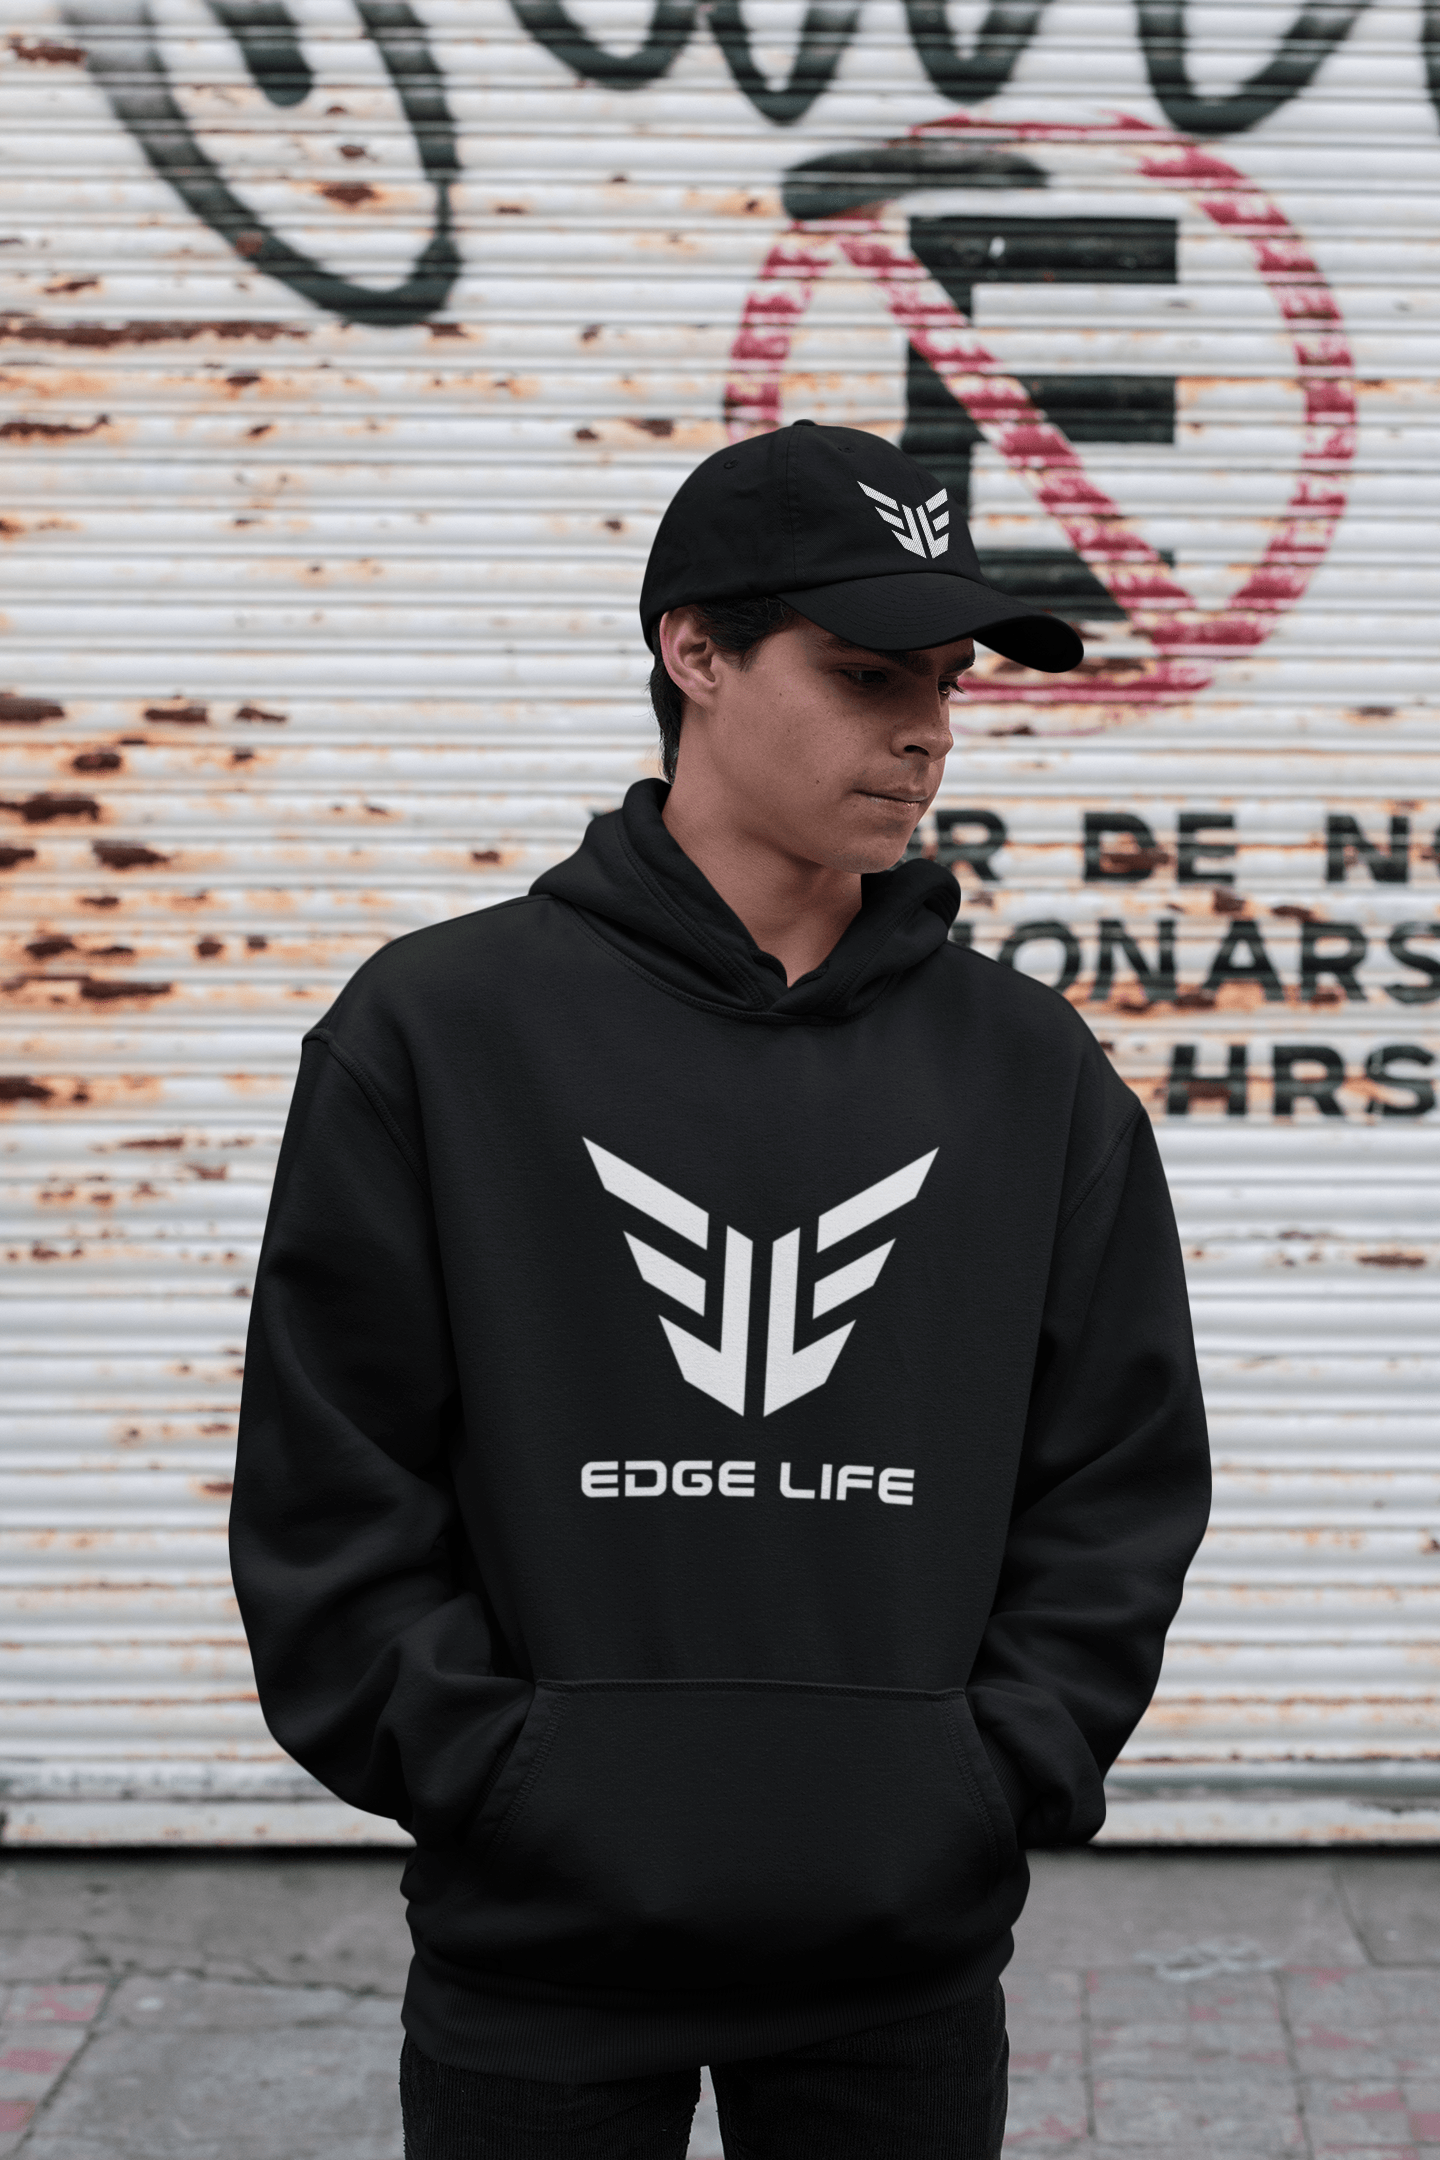 Edge Life Online Store